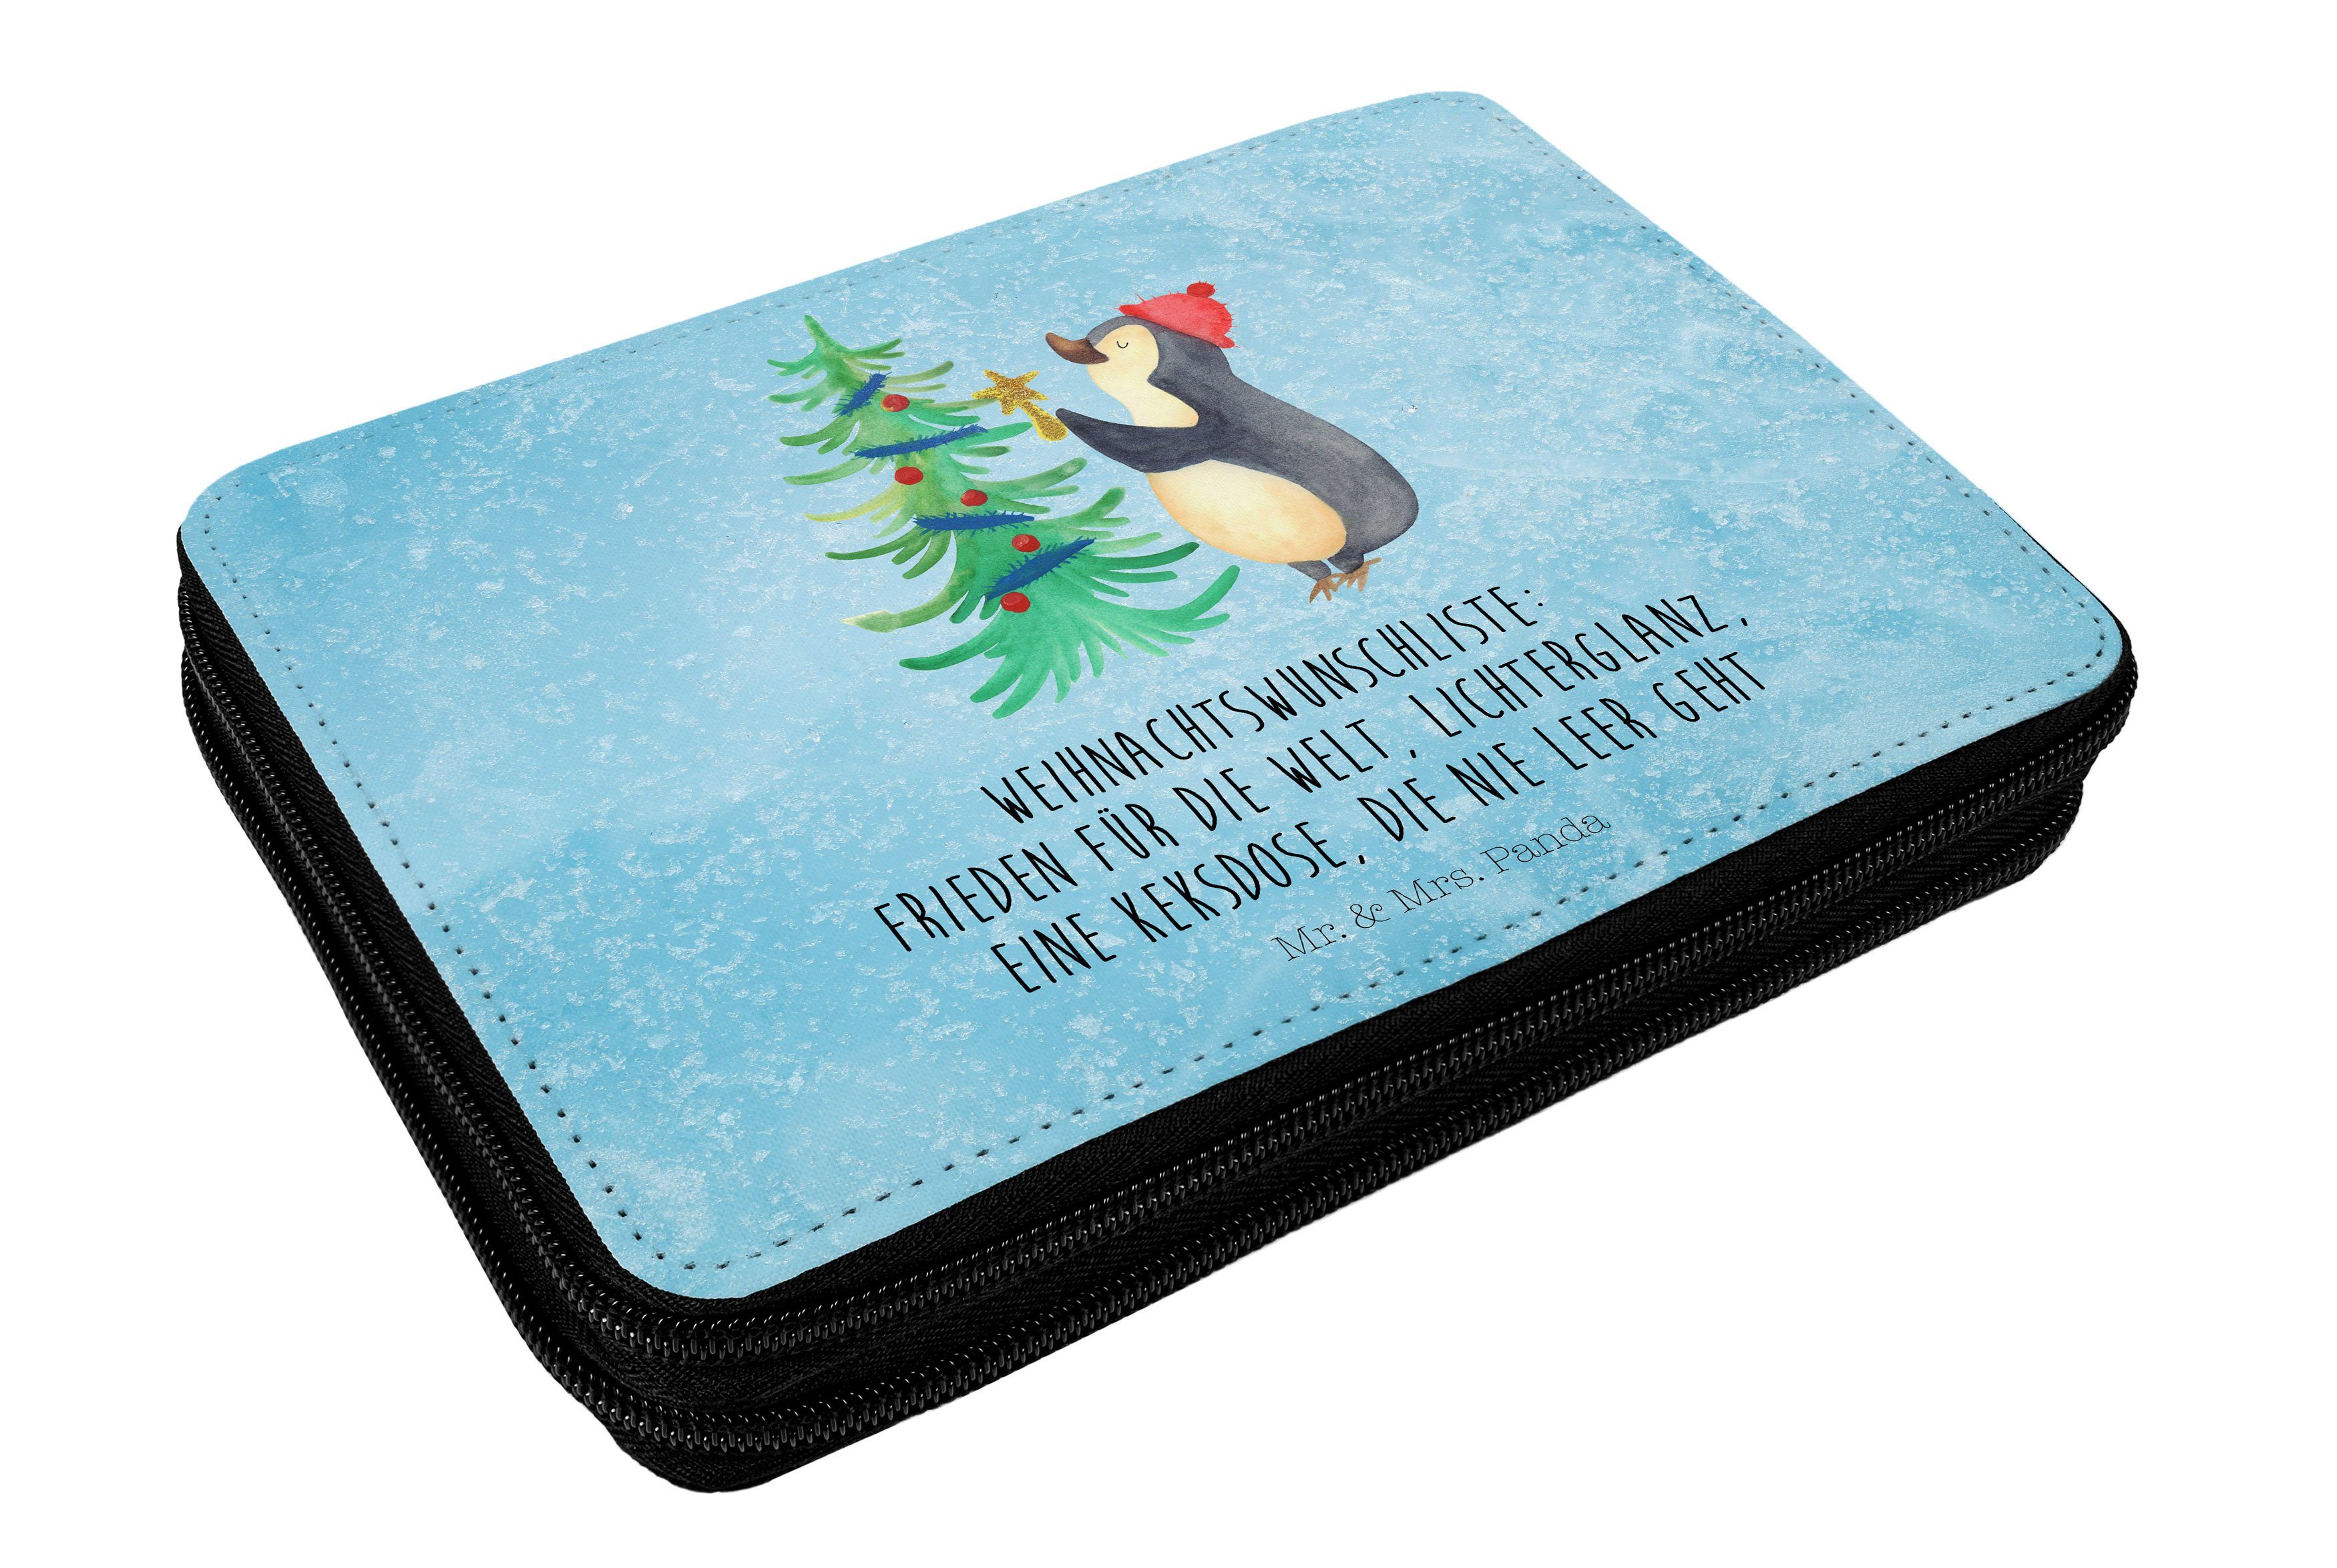 Mr. & Mrs. Panda Einschulun, - - Geschenk, Eisblau Stiftetasche, Weihnachtsbaum (1-tlg) Federmäppchen Pinguin